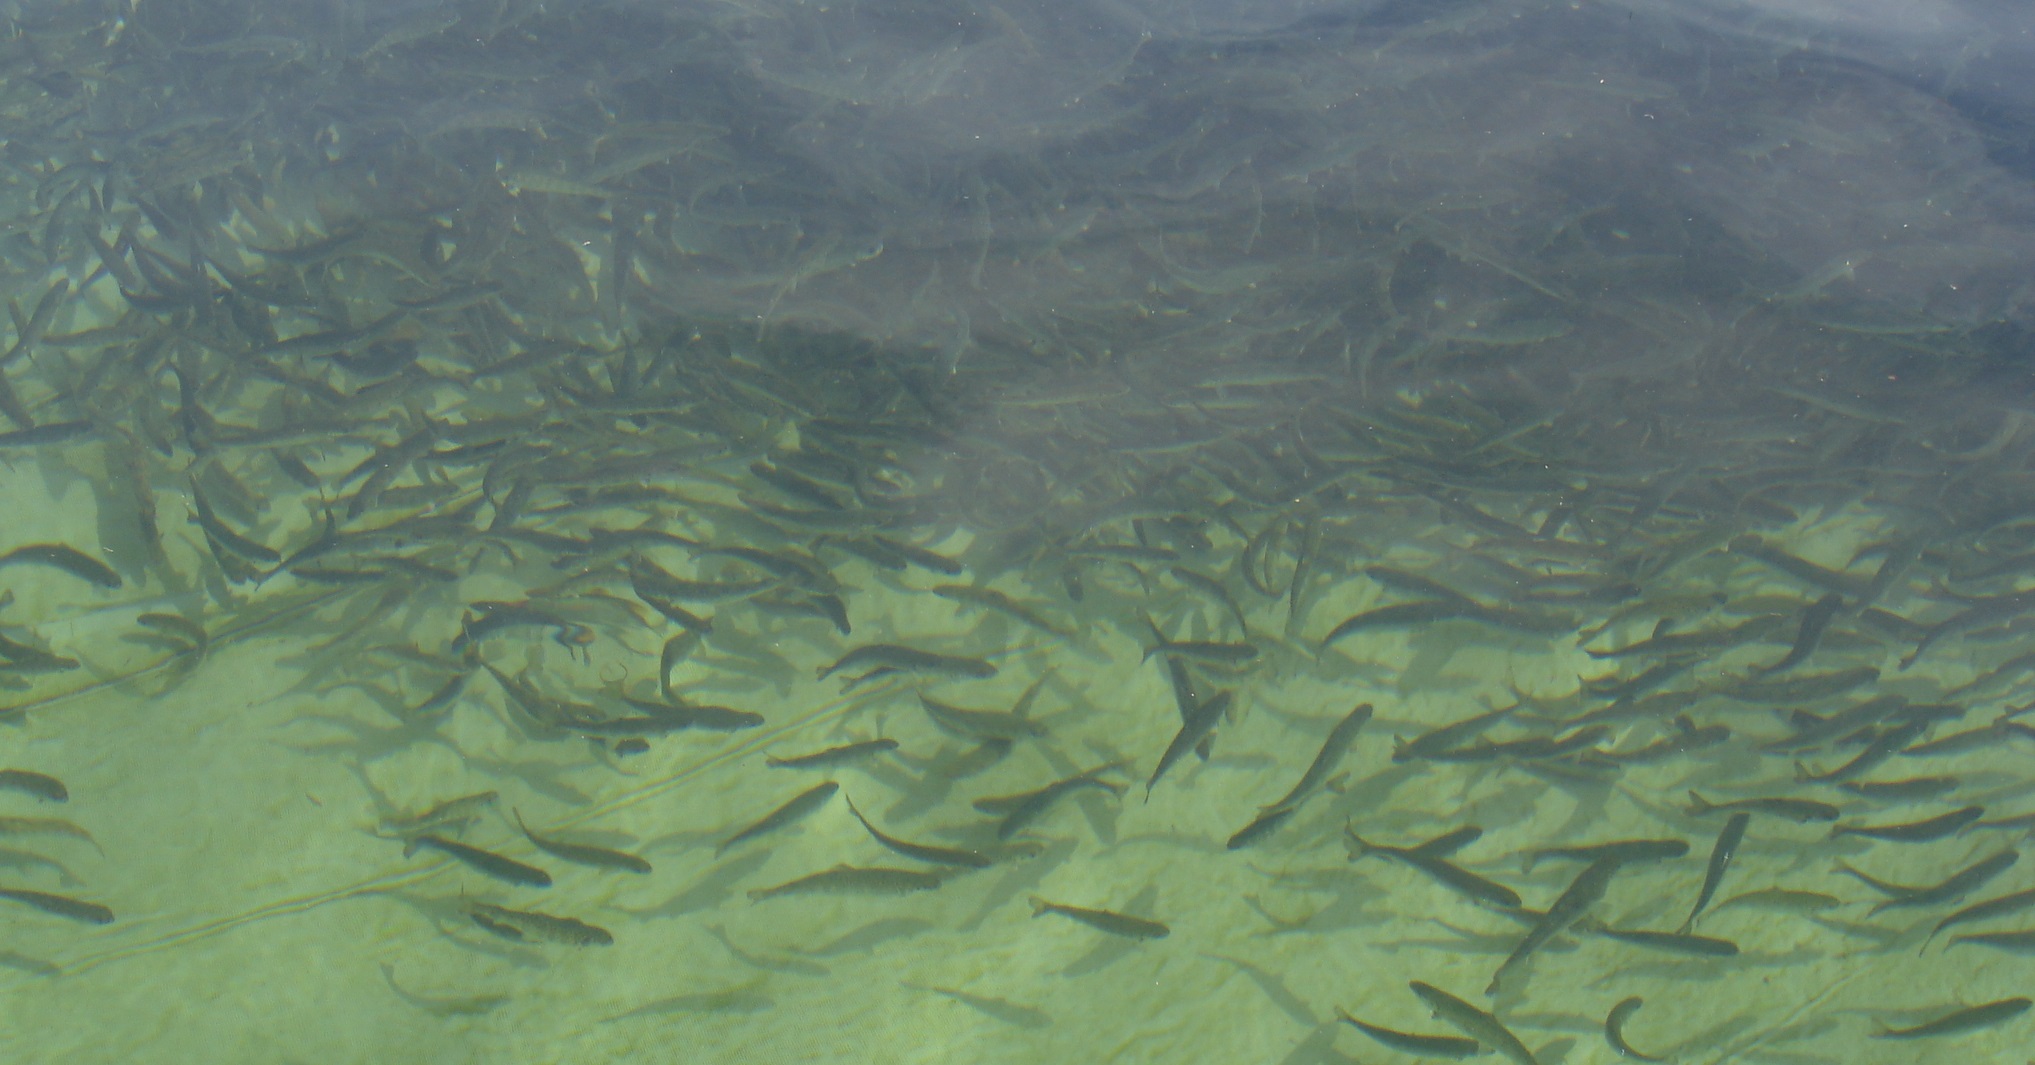 Subpesca informó modificación de exigencias en reglamento sanitario de la acuicultura